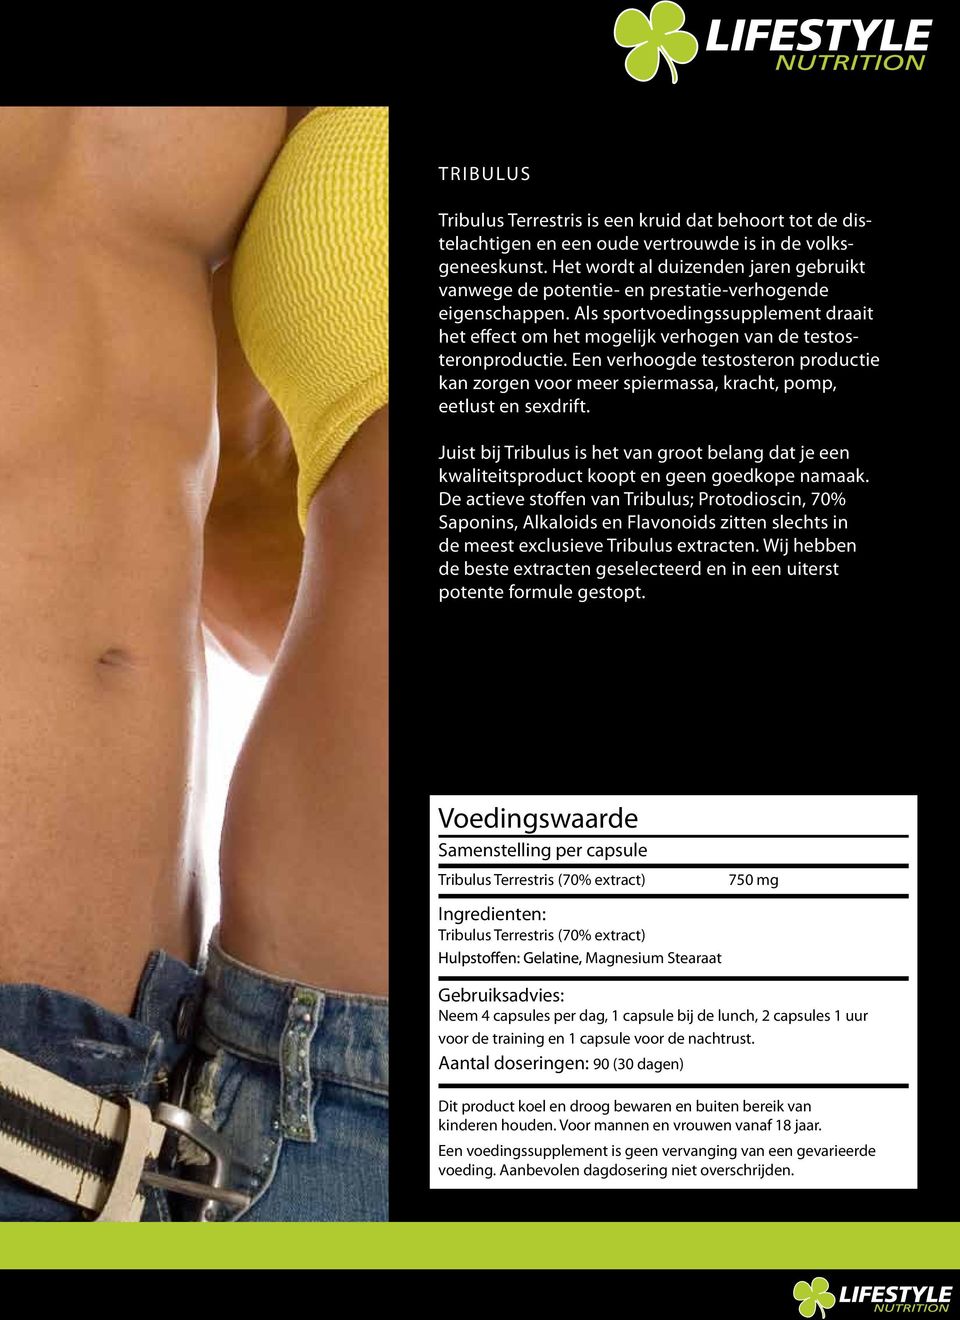 Een verhoogde testosteron productie kan zorgen voor meer spiermassa, kracht, pomp, eetlust en sexdrift.